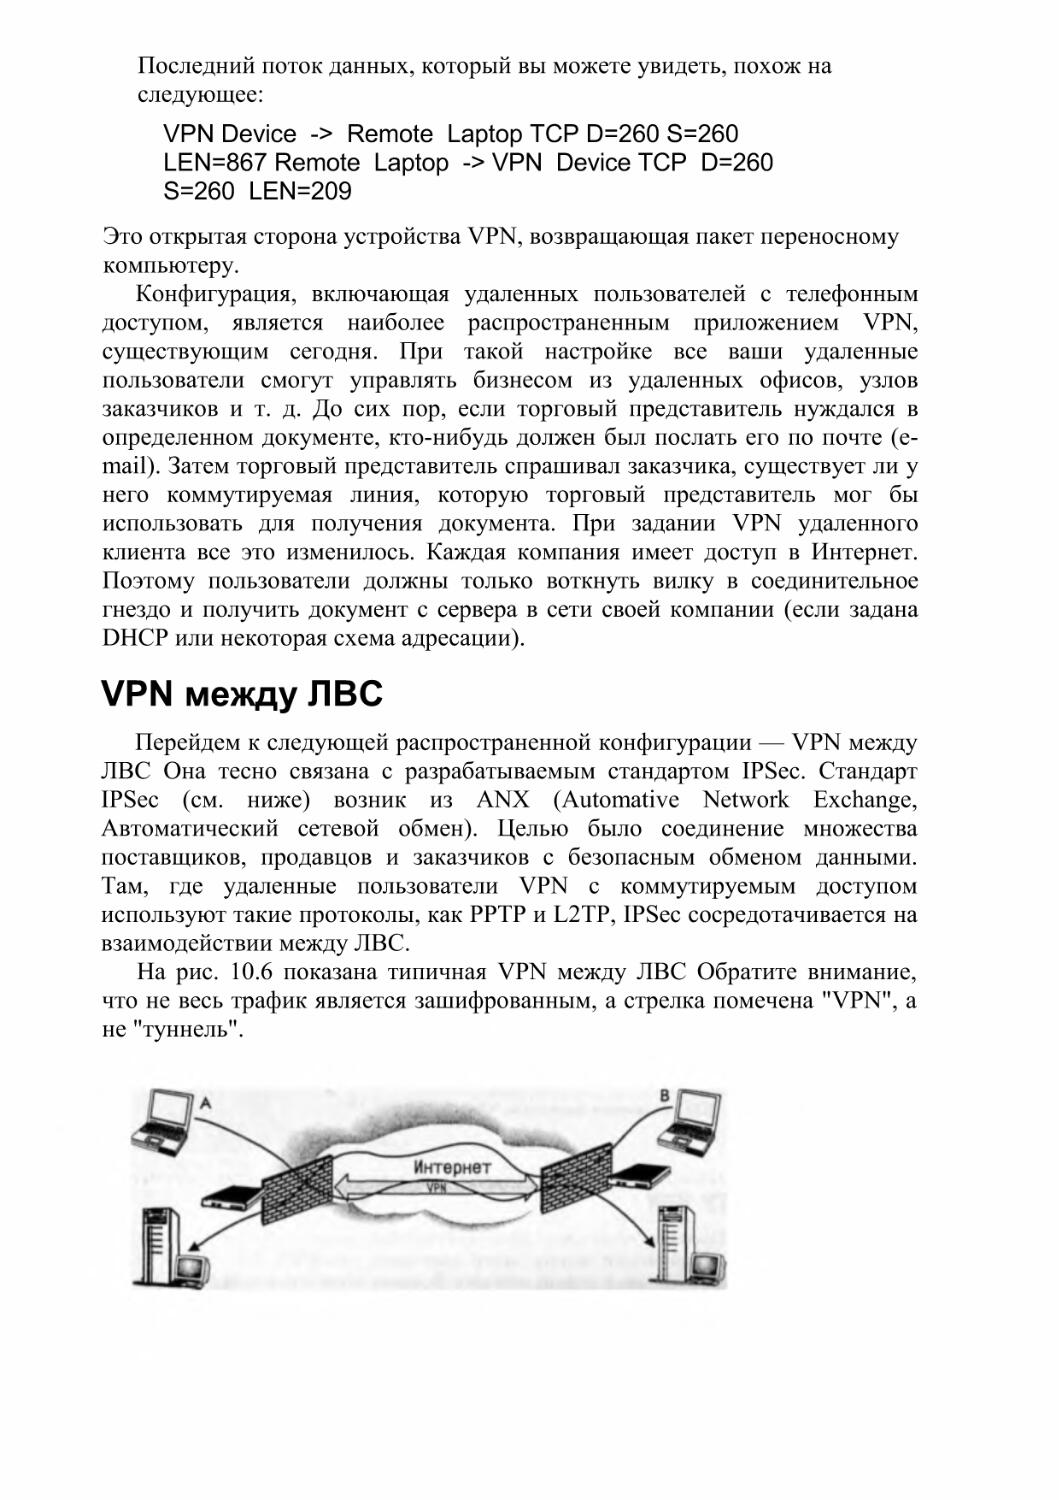 VPN между ЛВС